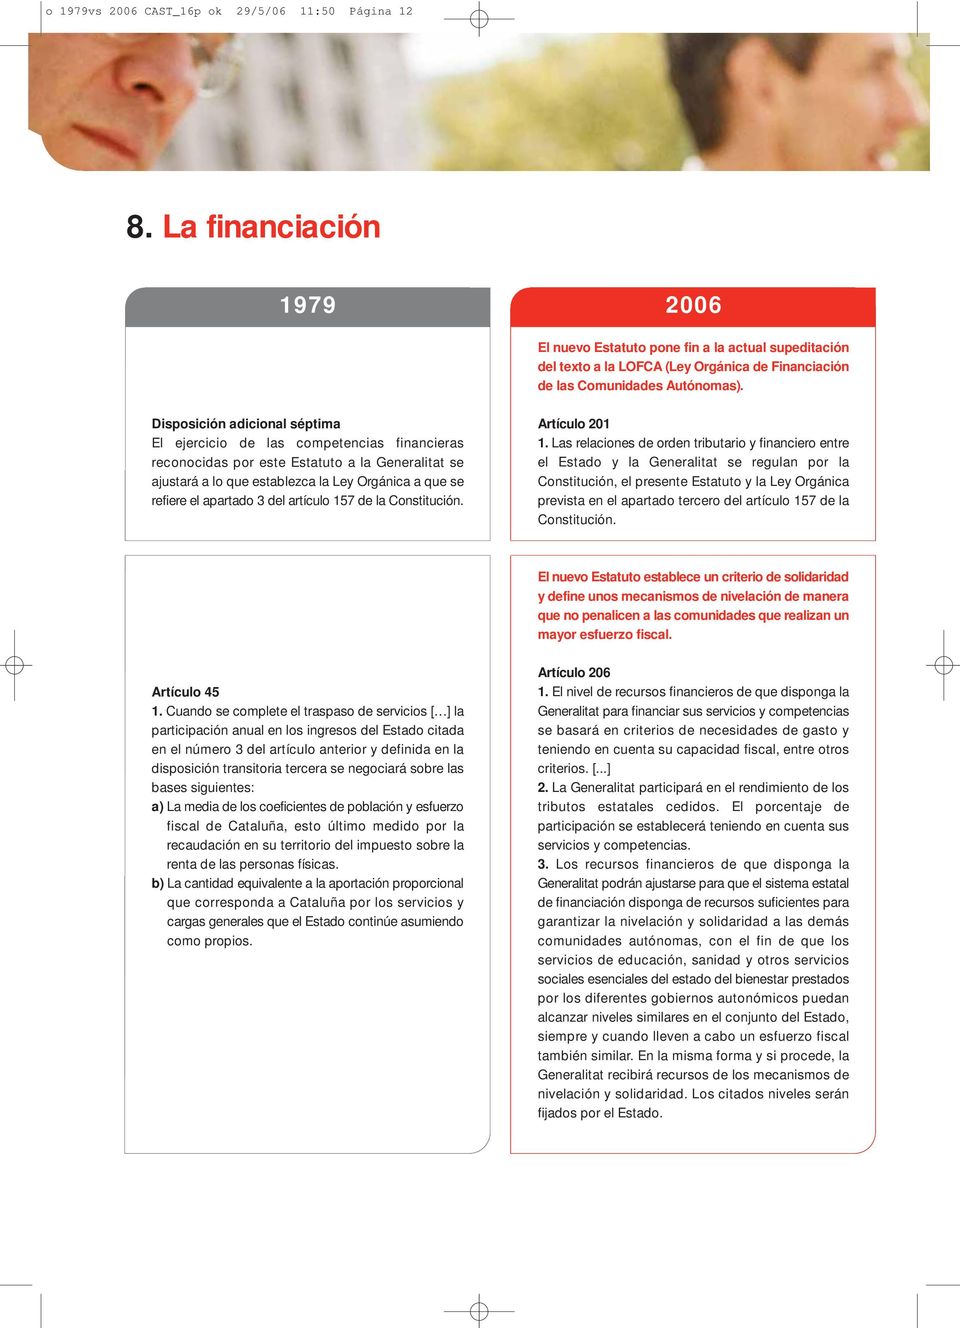 Disposición adicional séptima El ejercicio de las competencias financieras reconocidas por este Estatuto a la Generalitat se ajustará a lo que establezca la Ley Orgánica a que se refiere el apartado